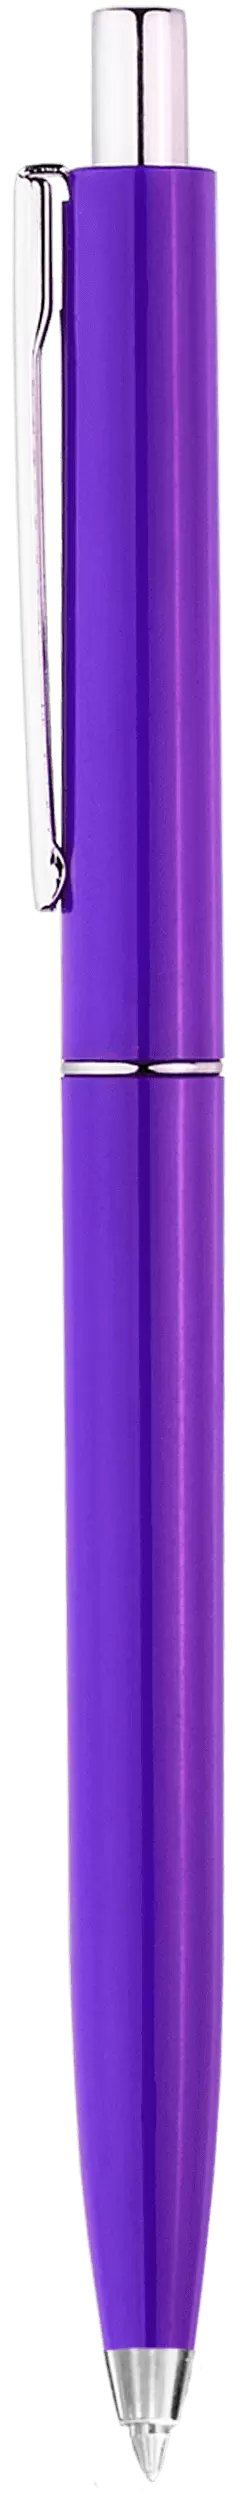 Ручка TOP Фиолетовая 2016-11